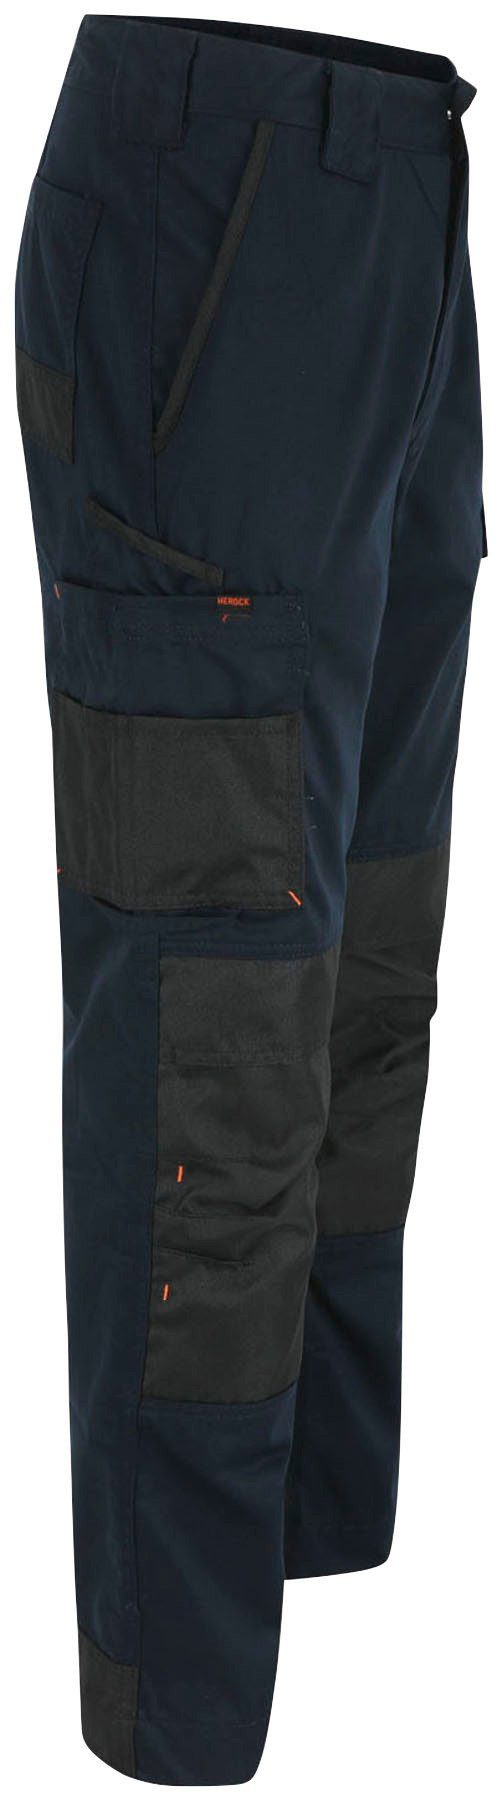 Herock Arbeitshose Taschen, bequem, Hose wasserabweisend, Leicht angenehme 10 Passform marine und Mars